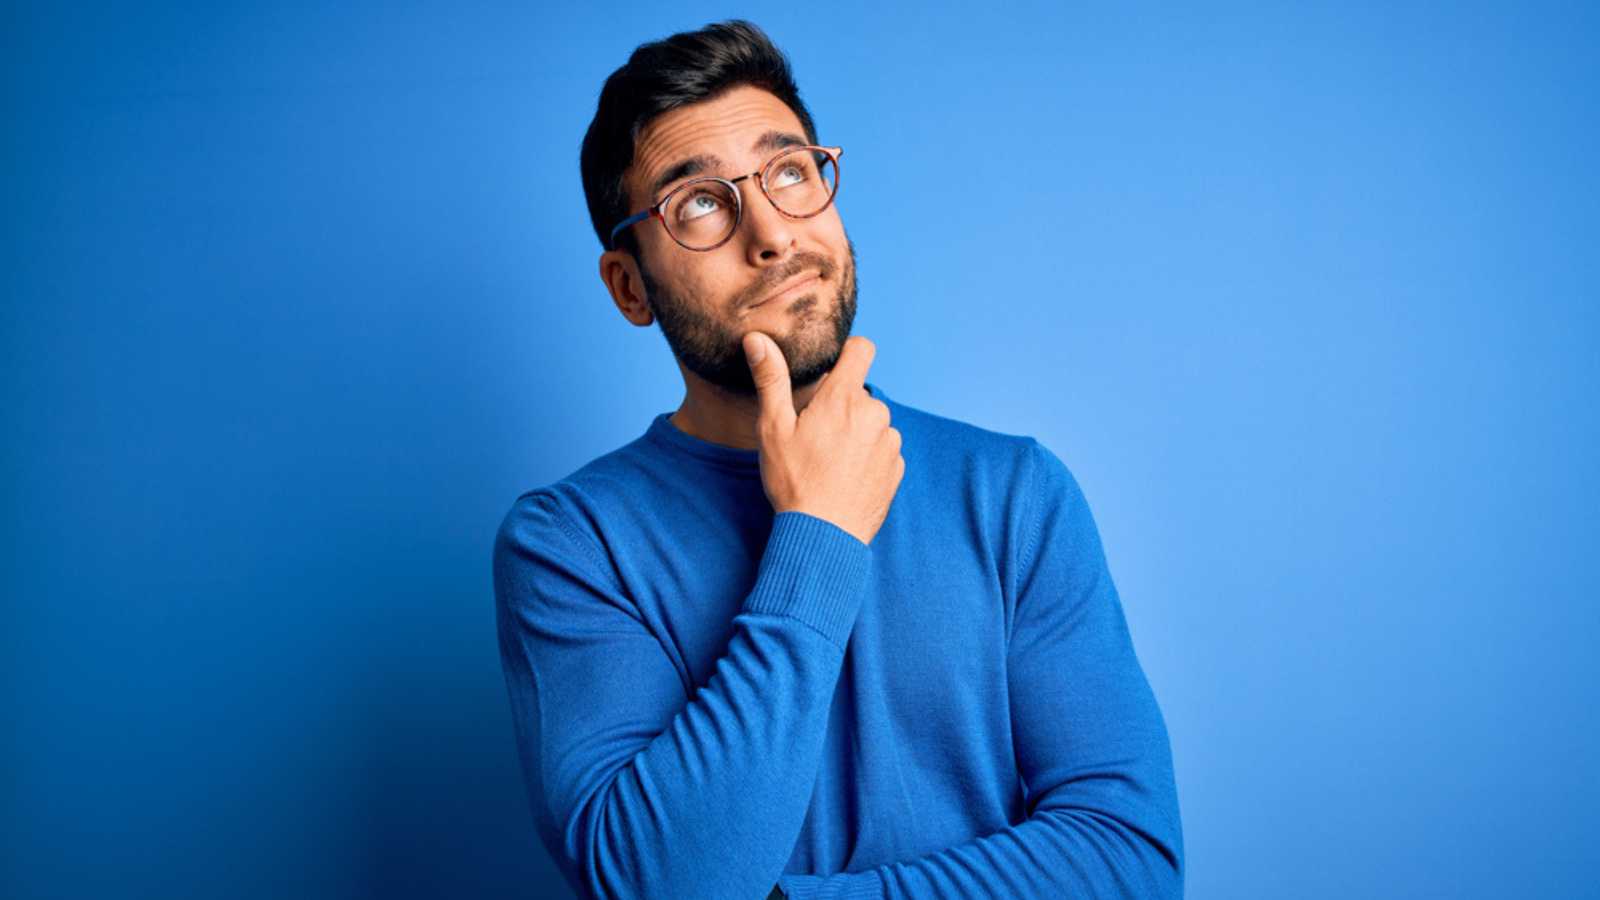 Người đàn ông trẻ có râu đẹp trai mặc áo len giản dị và đeo kính trên nền xanh đang suy nghĩ về việc lo lắng về một vấn đề nào đó và đặt tay lên cằm cảm thấy lo lắng và hồi hộp